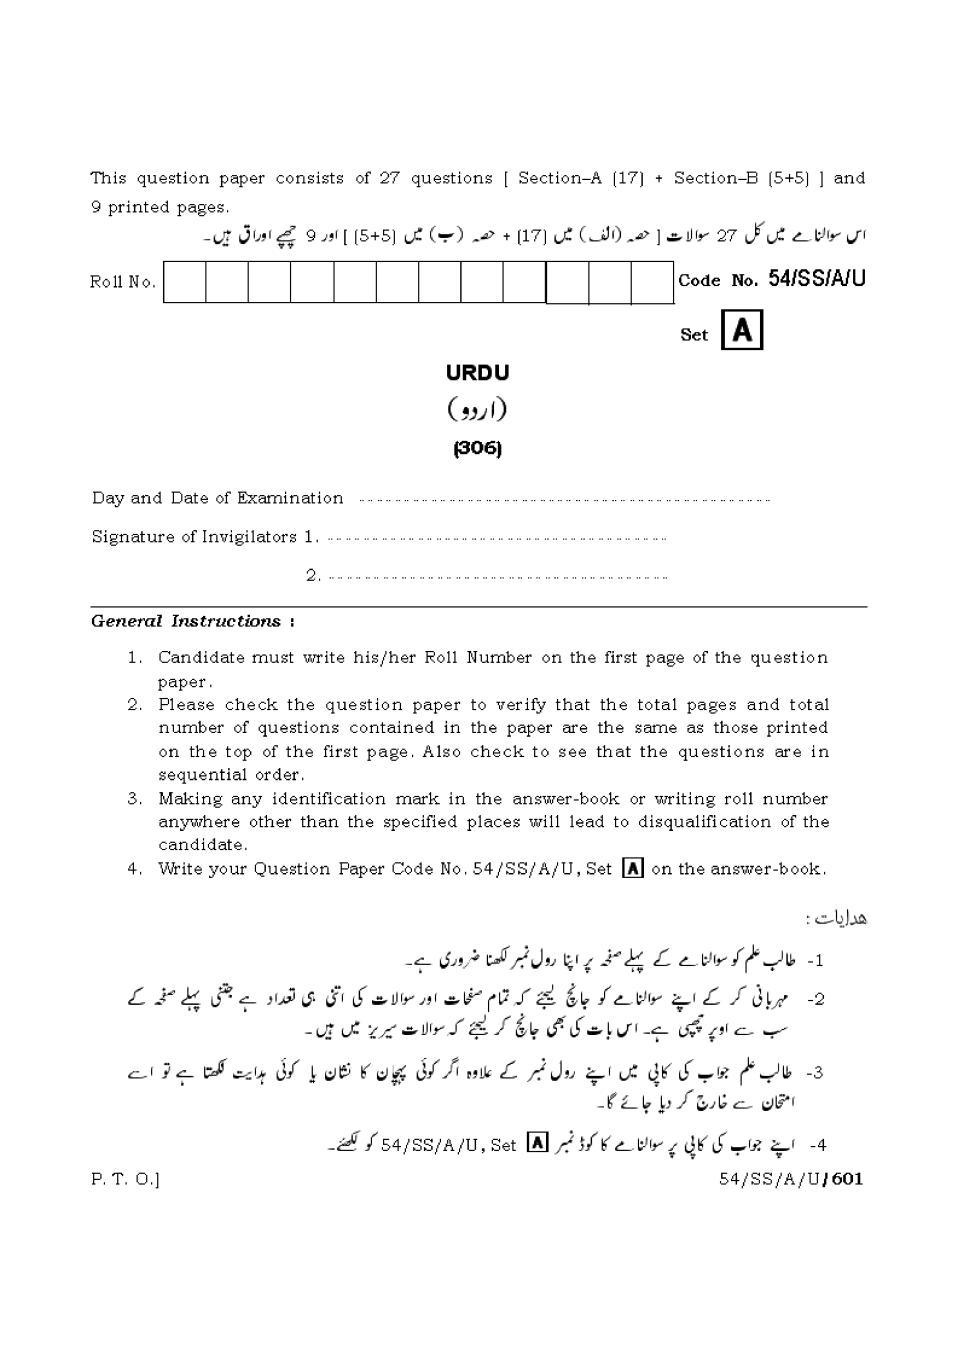 NIOS Class 12 Question Paper Apr 2017 - Urdu - Page 1